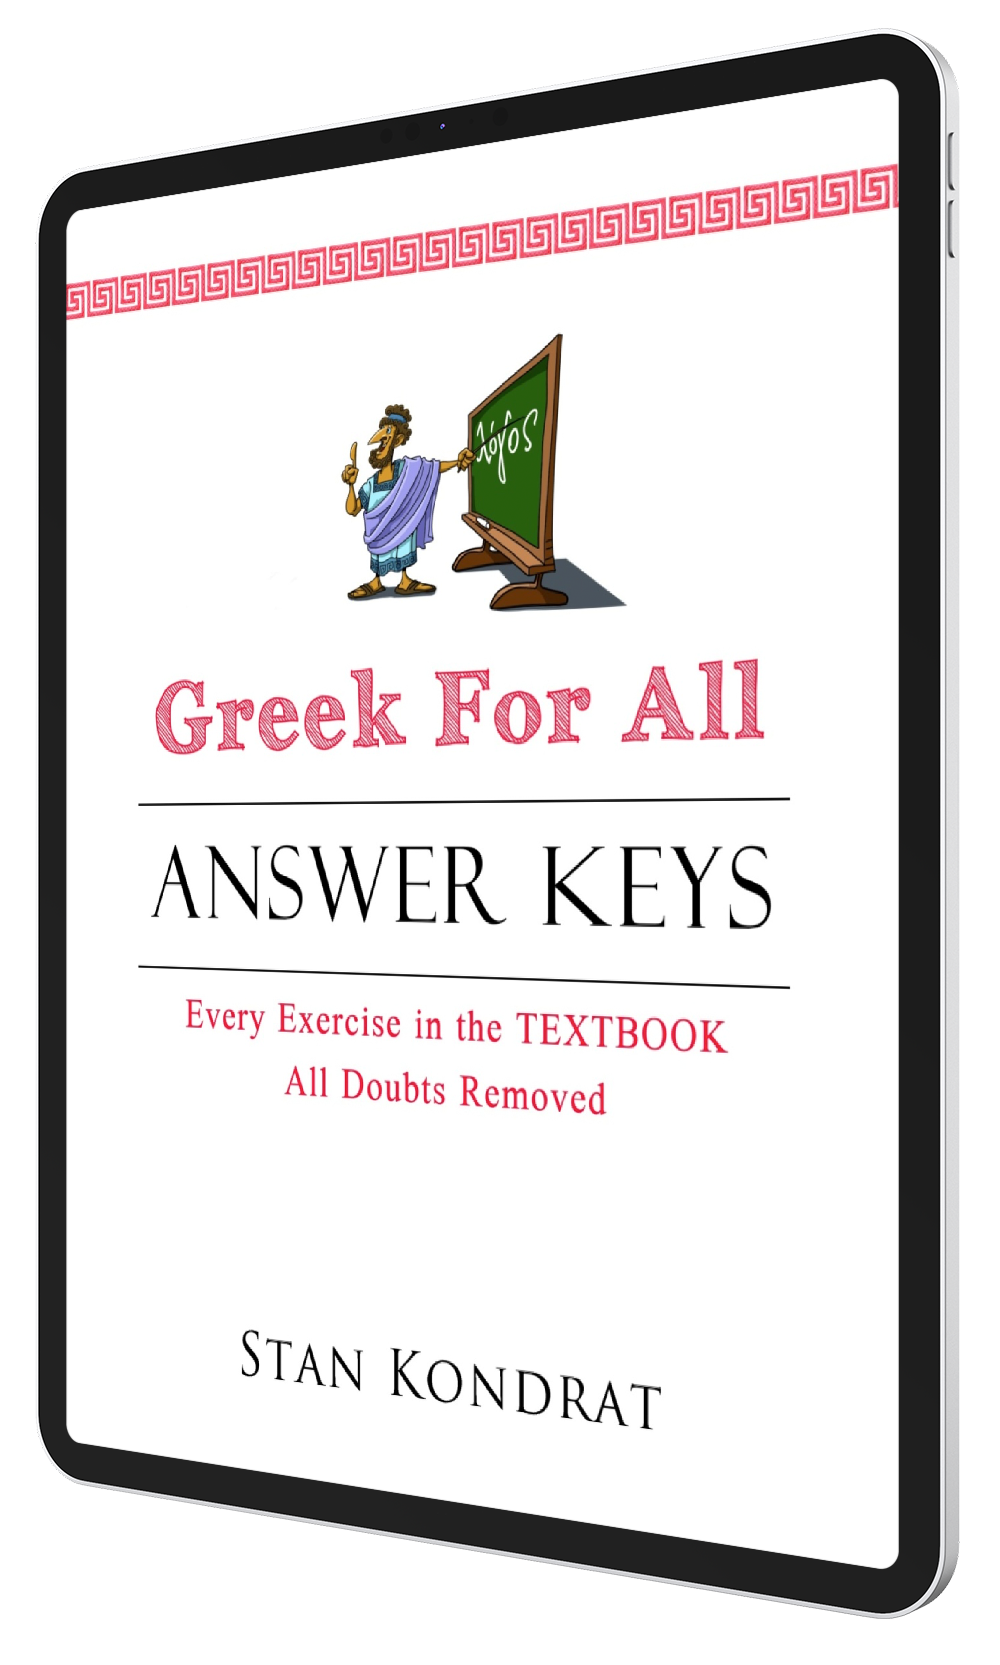 Greek Andrews key